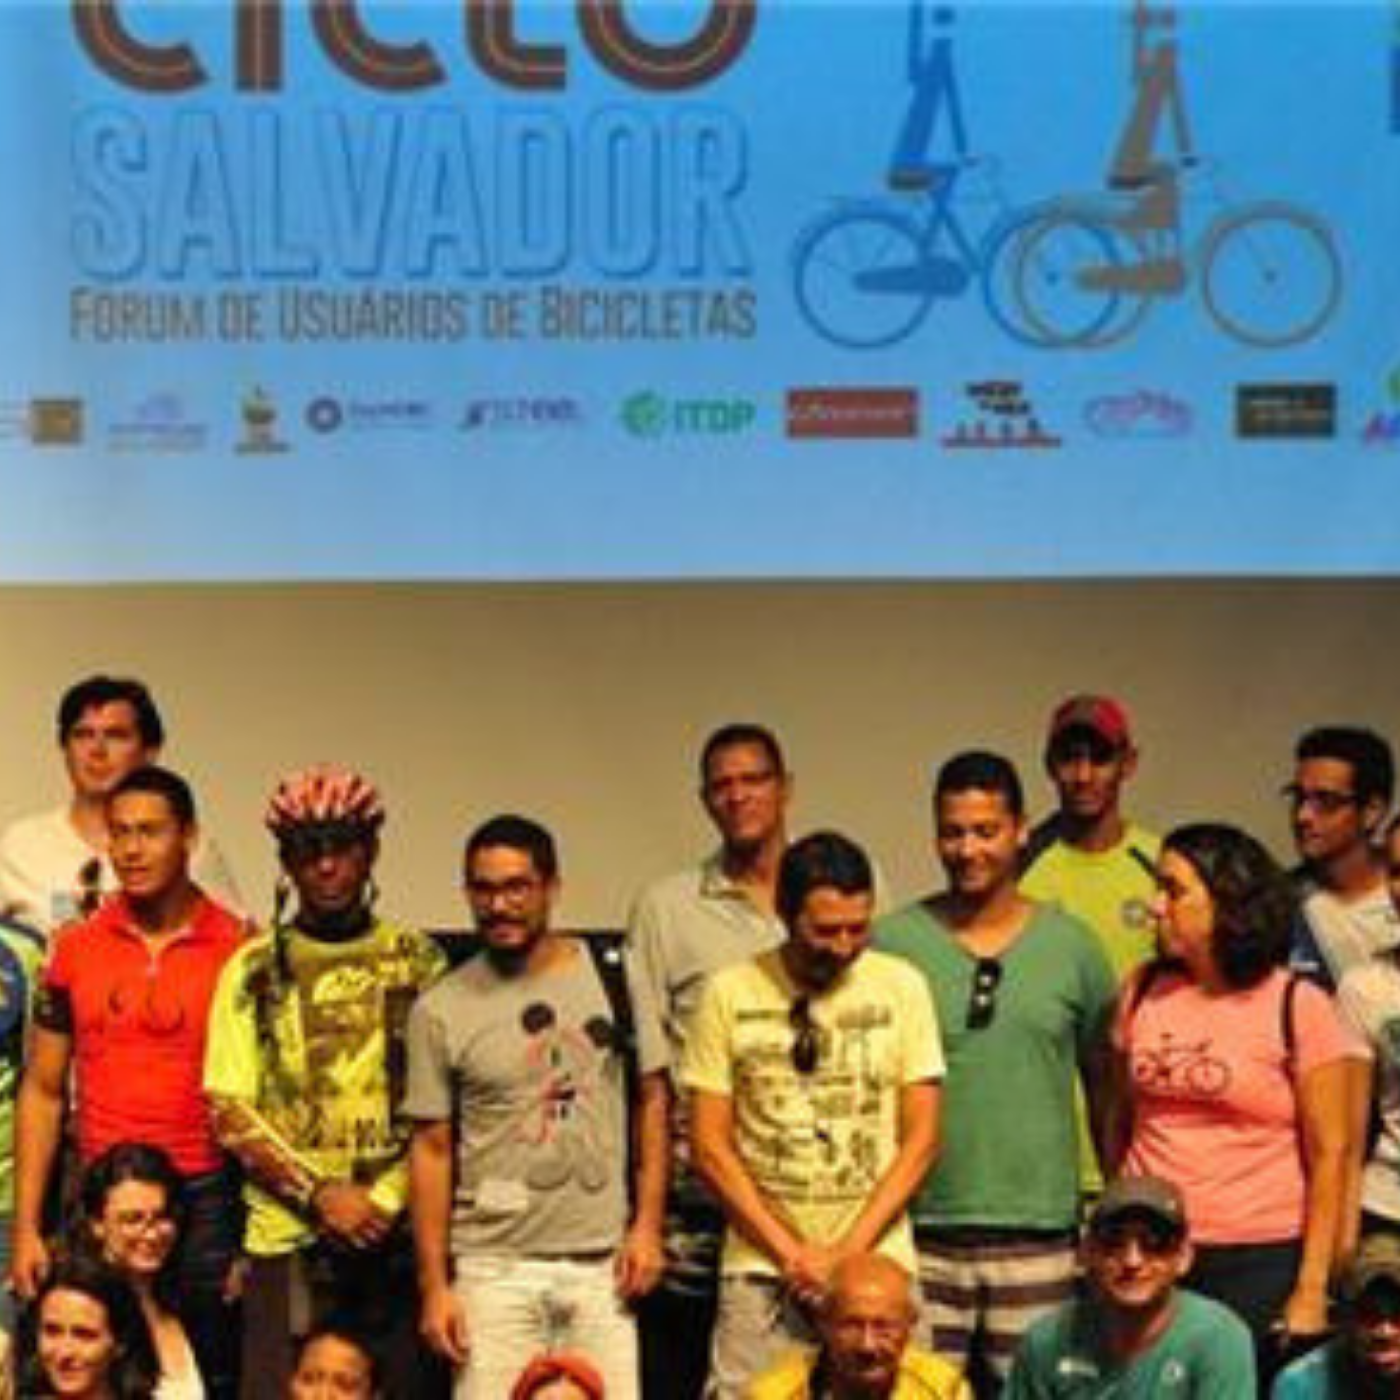 Mobilize Brasil: Salvador quer se tornar cidade amiga da bicicleta